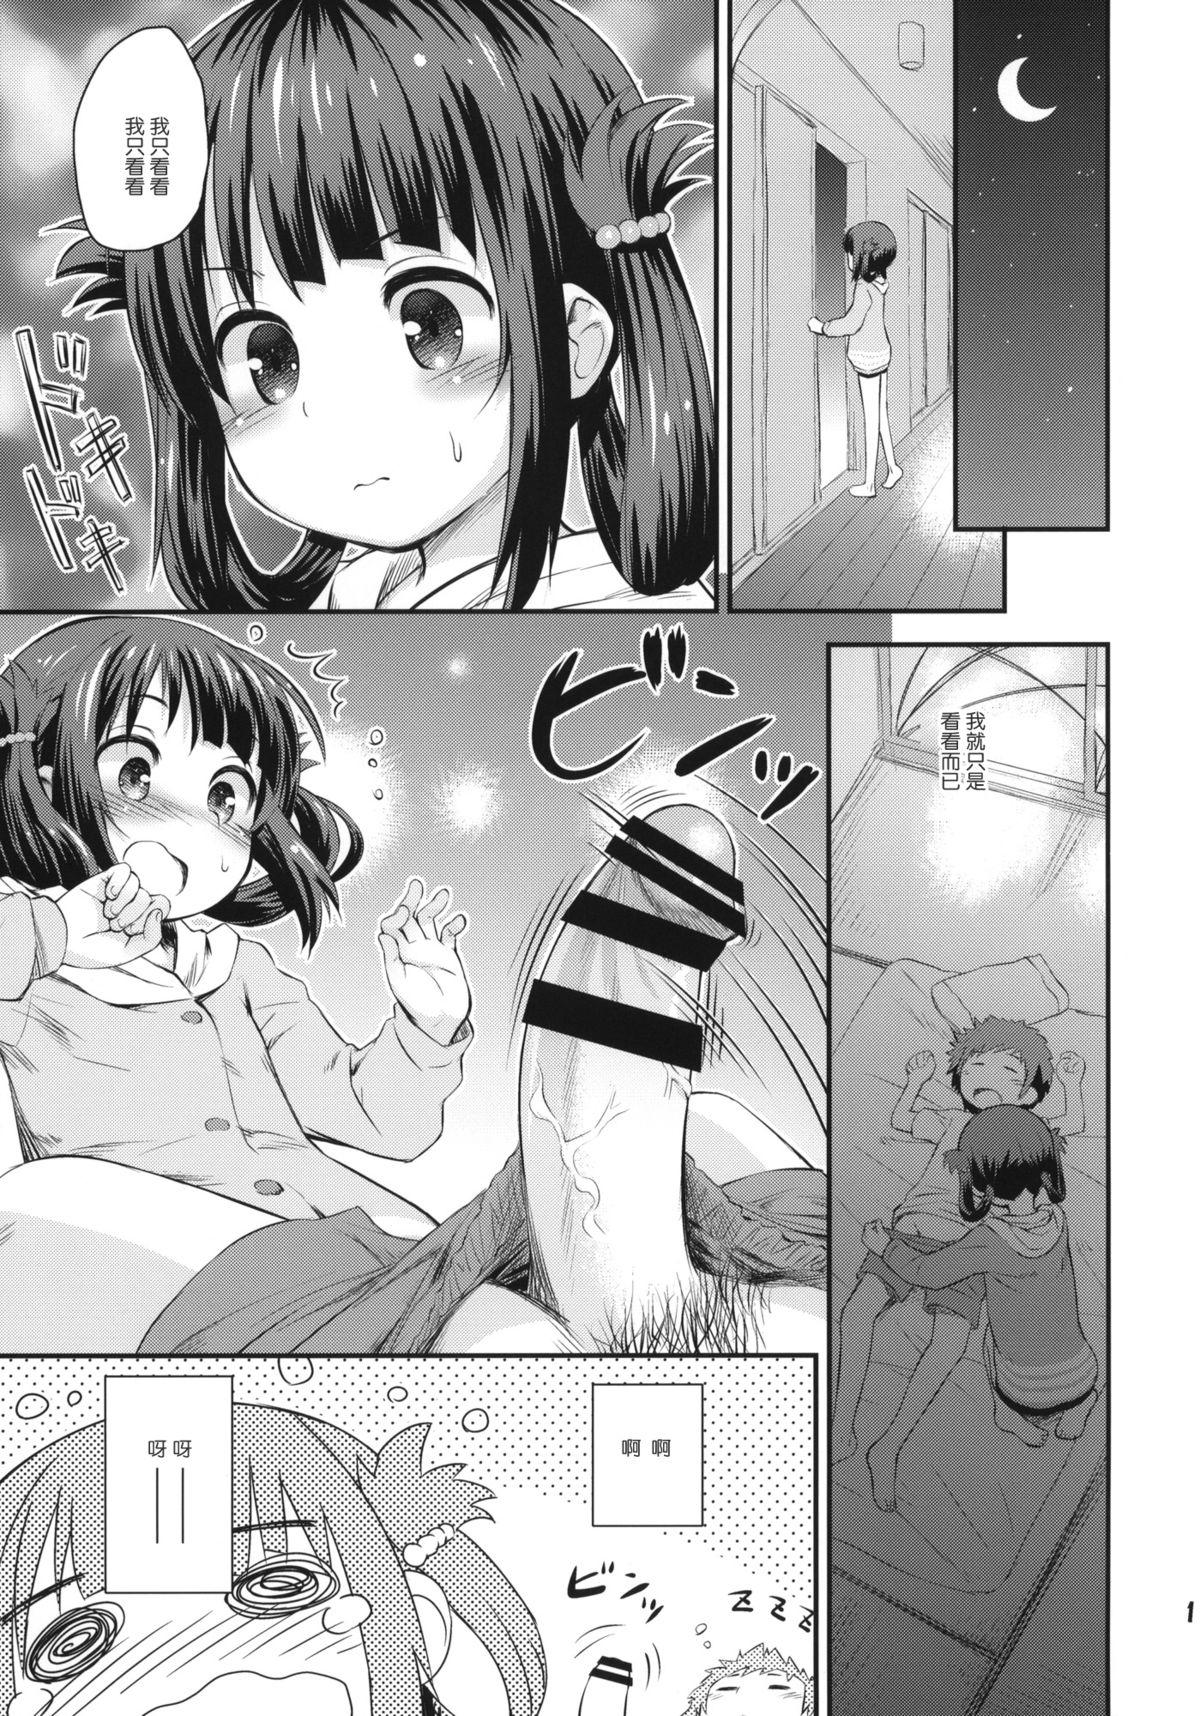 Extreme Hatsu Miuna - Nagi no asukara Foot Job - Page 10